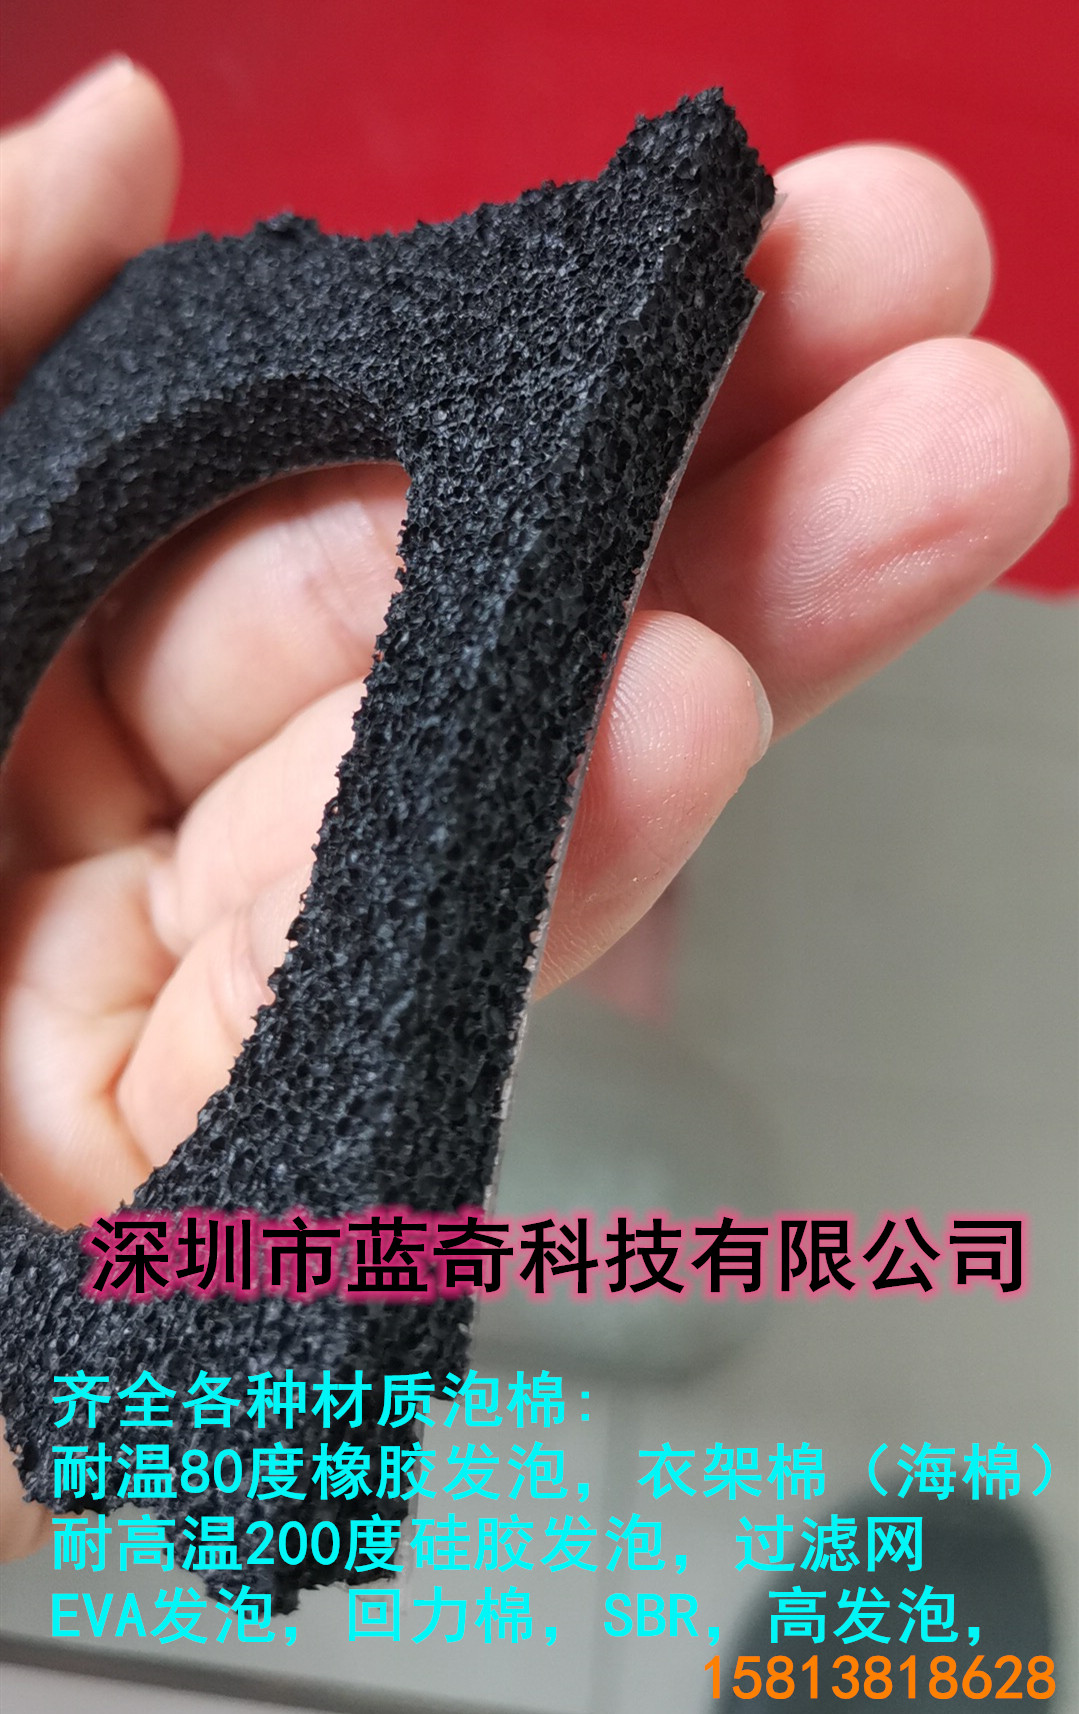 软性橡胶泡棉阻燃-深圳市蓝奇科技有限公司